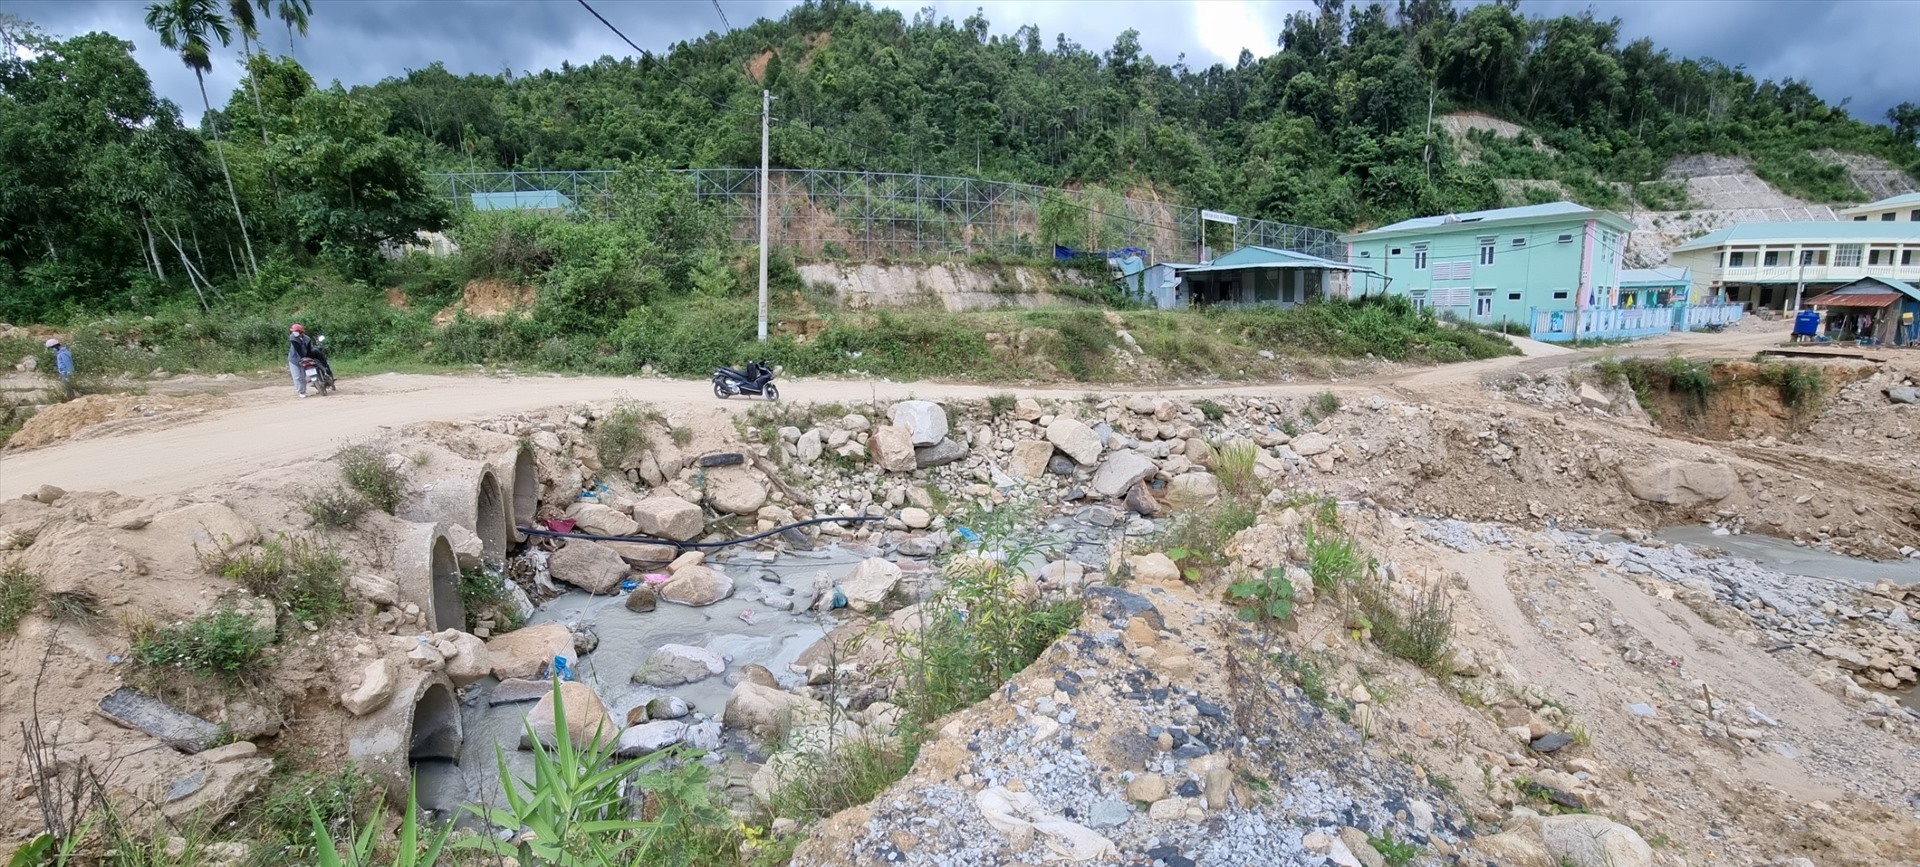 Nước thải từ hoạt động mỏ vàng theo con suối chảy qua ruộng vườn, khu dân cư, trường học và UBND xã Phước Thành nhưng khi phóng viên đề cập thì địa phương mới cho kiểm tra lại. Ảnh Hoàng Bin.